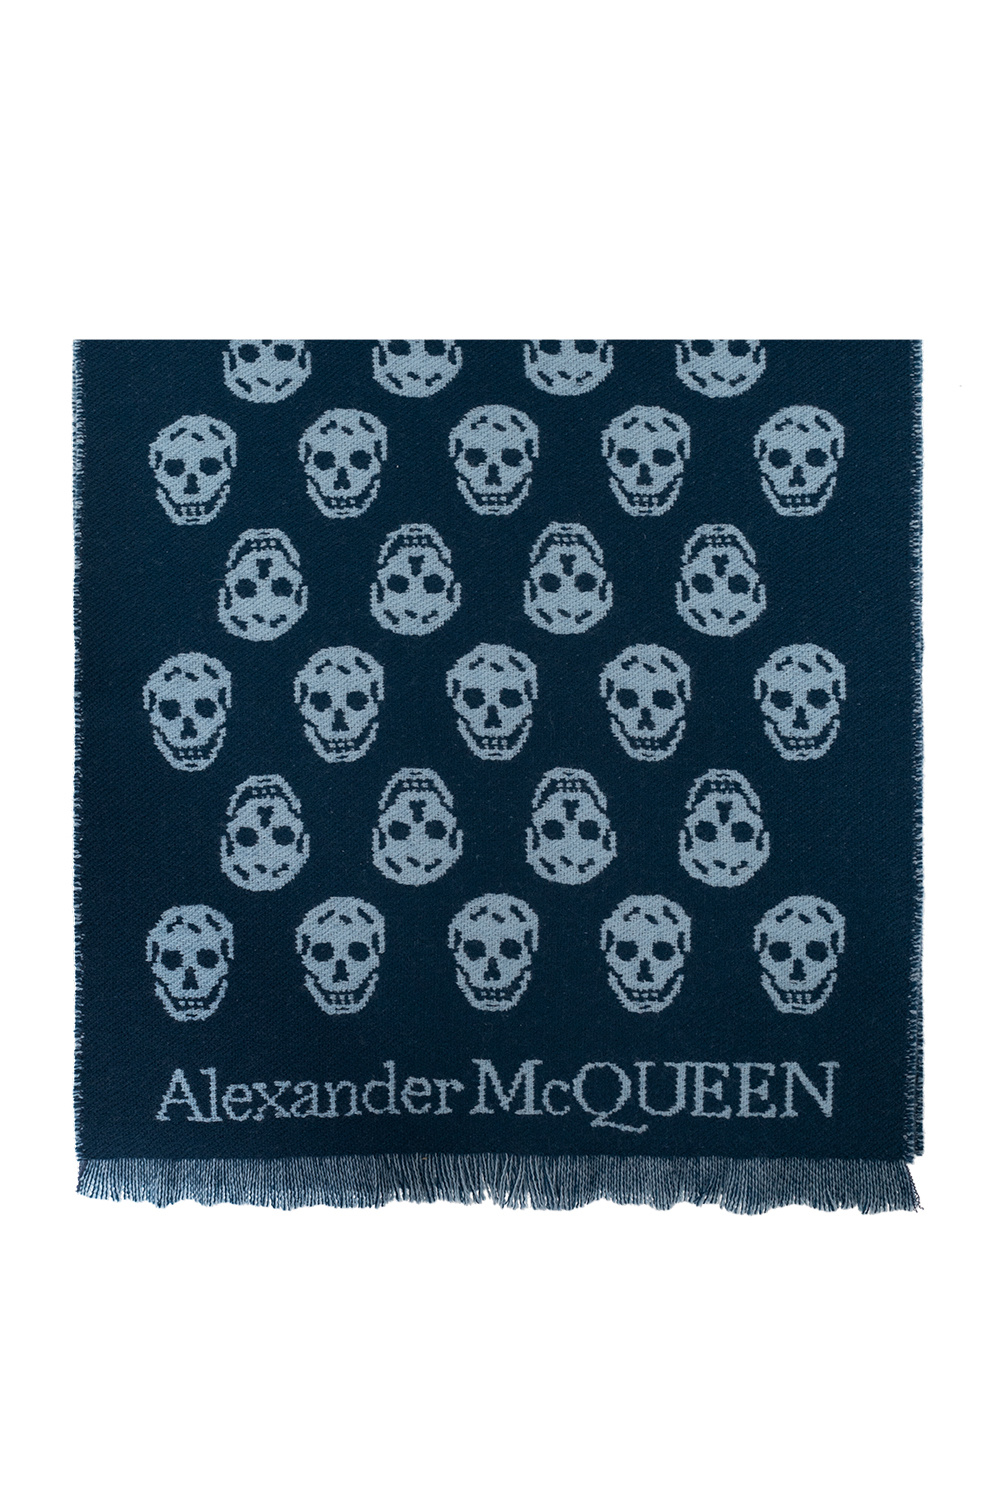 Alexander McQueen woman alexander mcqueen knitwear a line cardigan